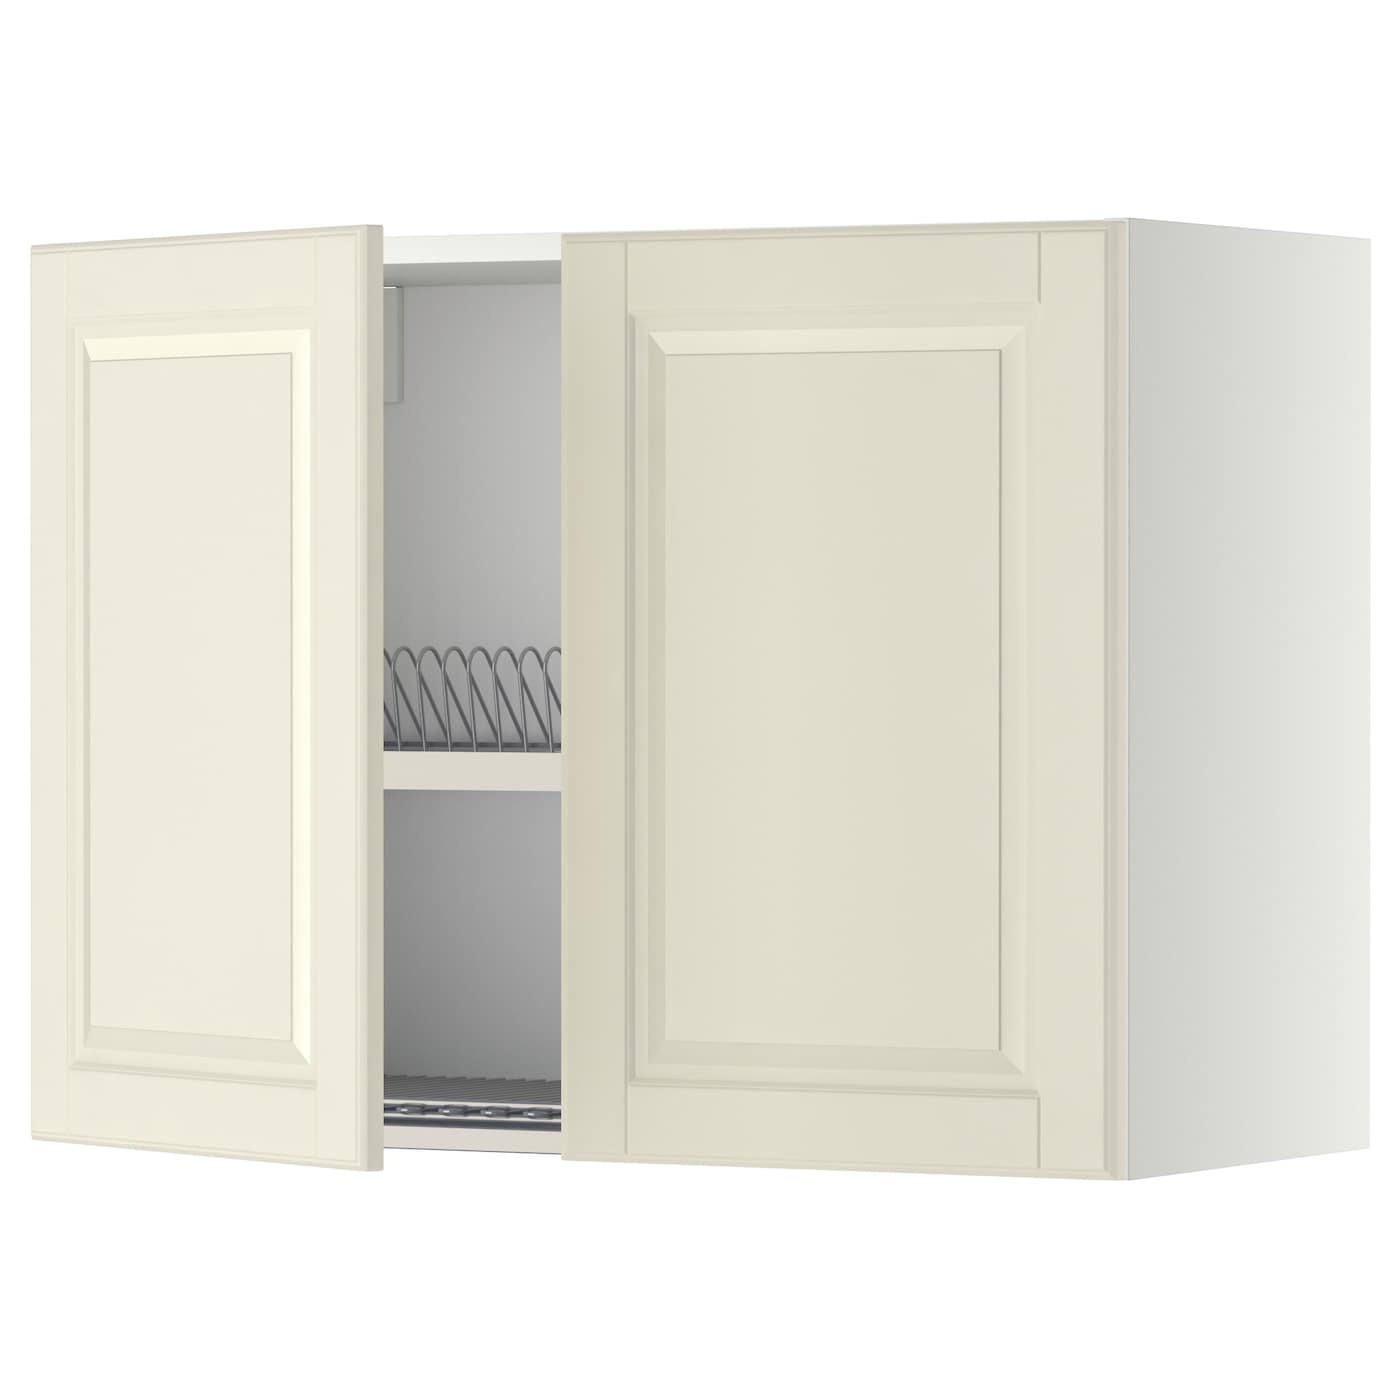 Навесной шкаф с сушилкой - METOD IKEA/ МЕТОД ИКЕА, 60х80 см, белый/кремовый